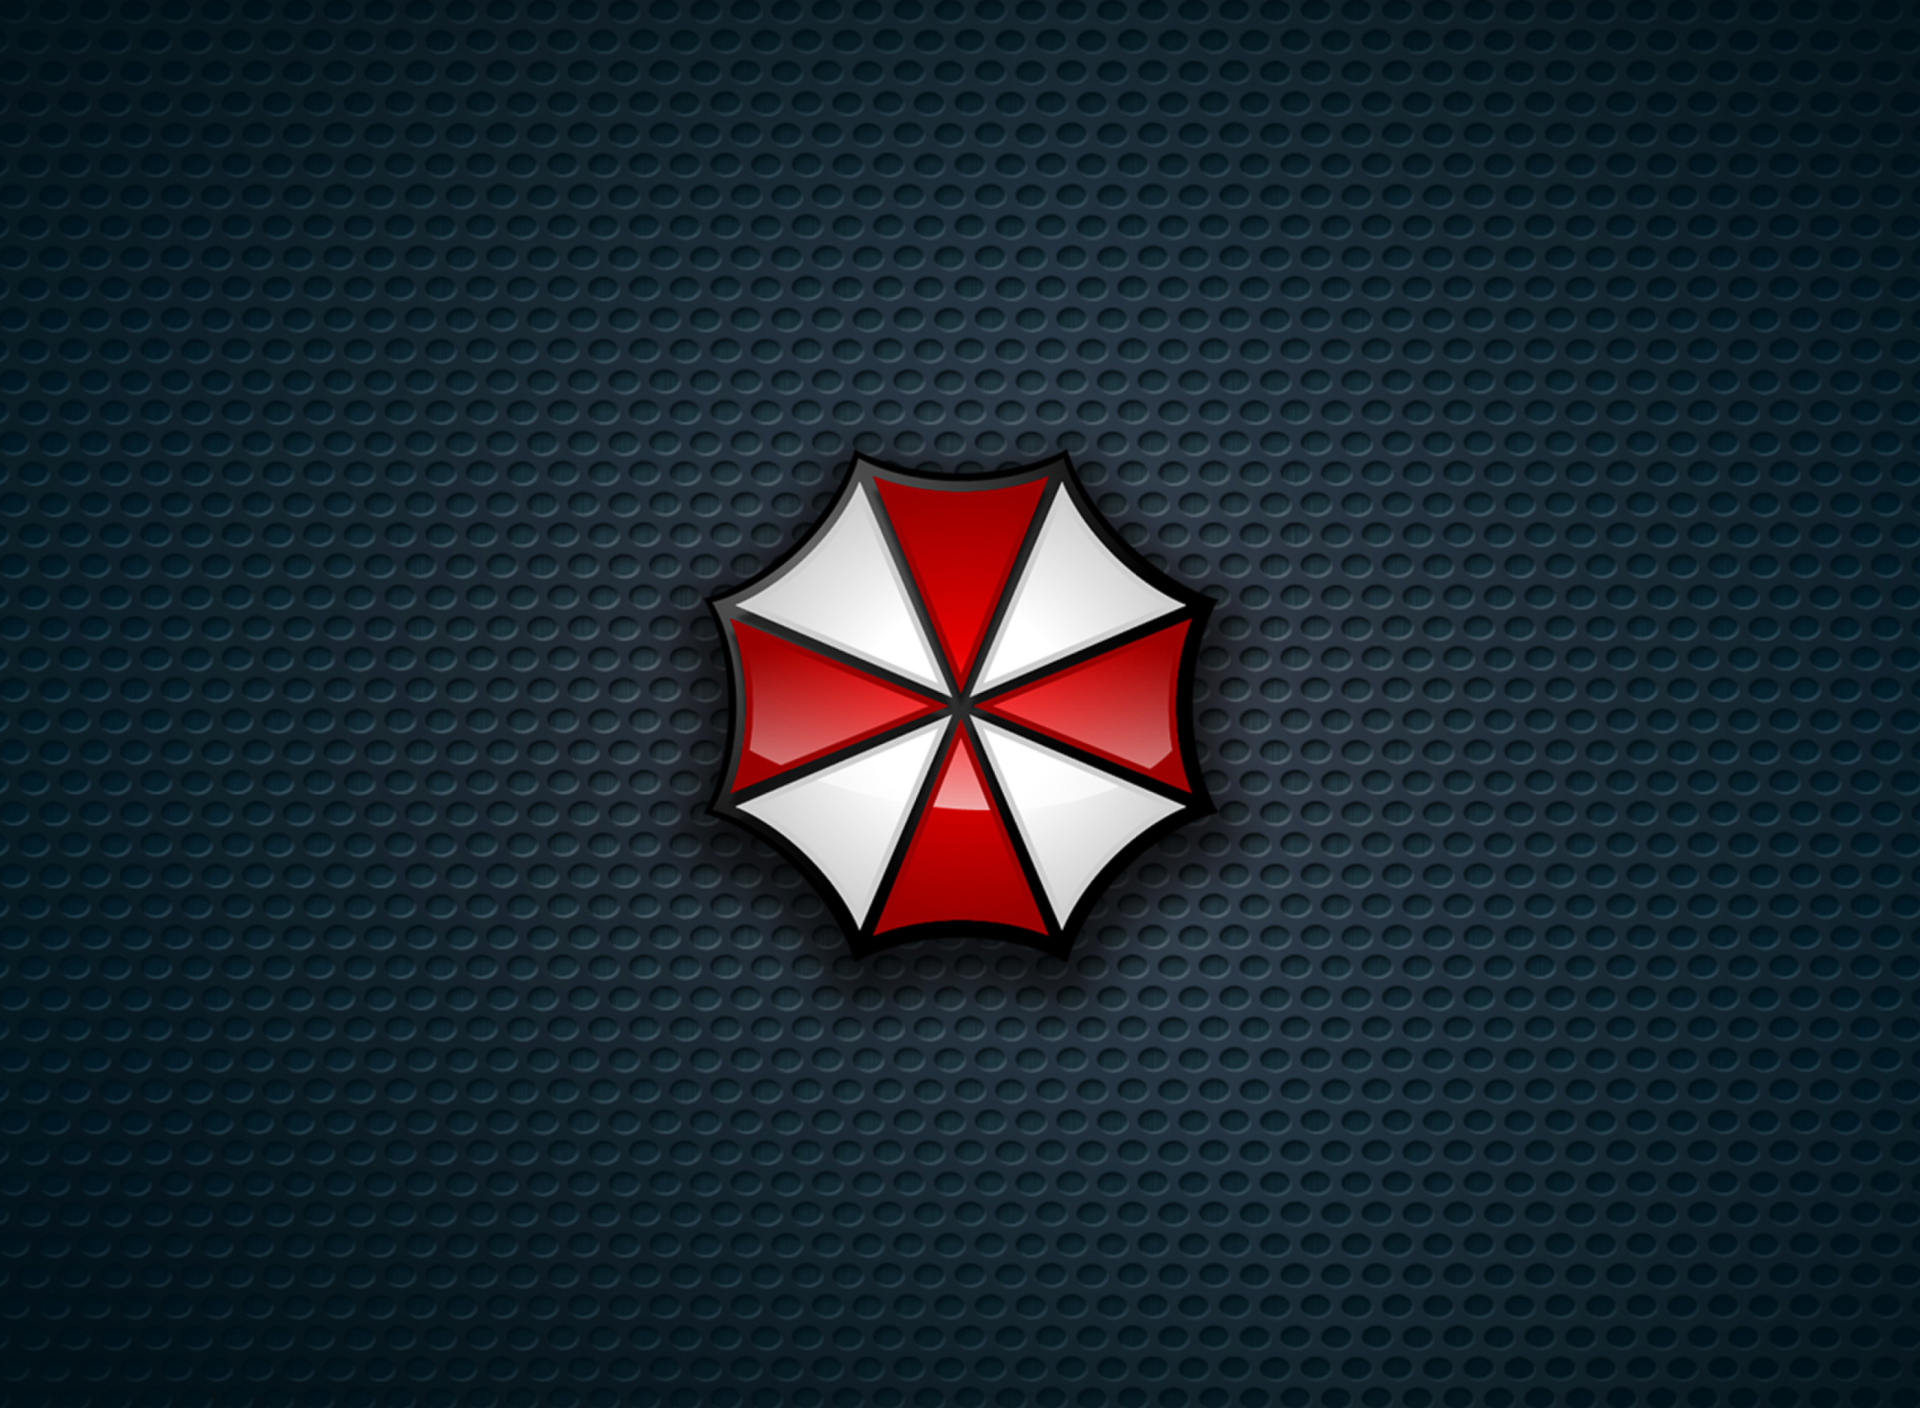 Umbrella Corporation screenshot #1 1920x1408